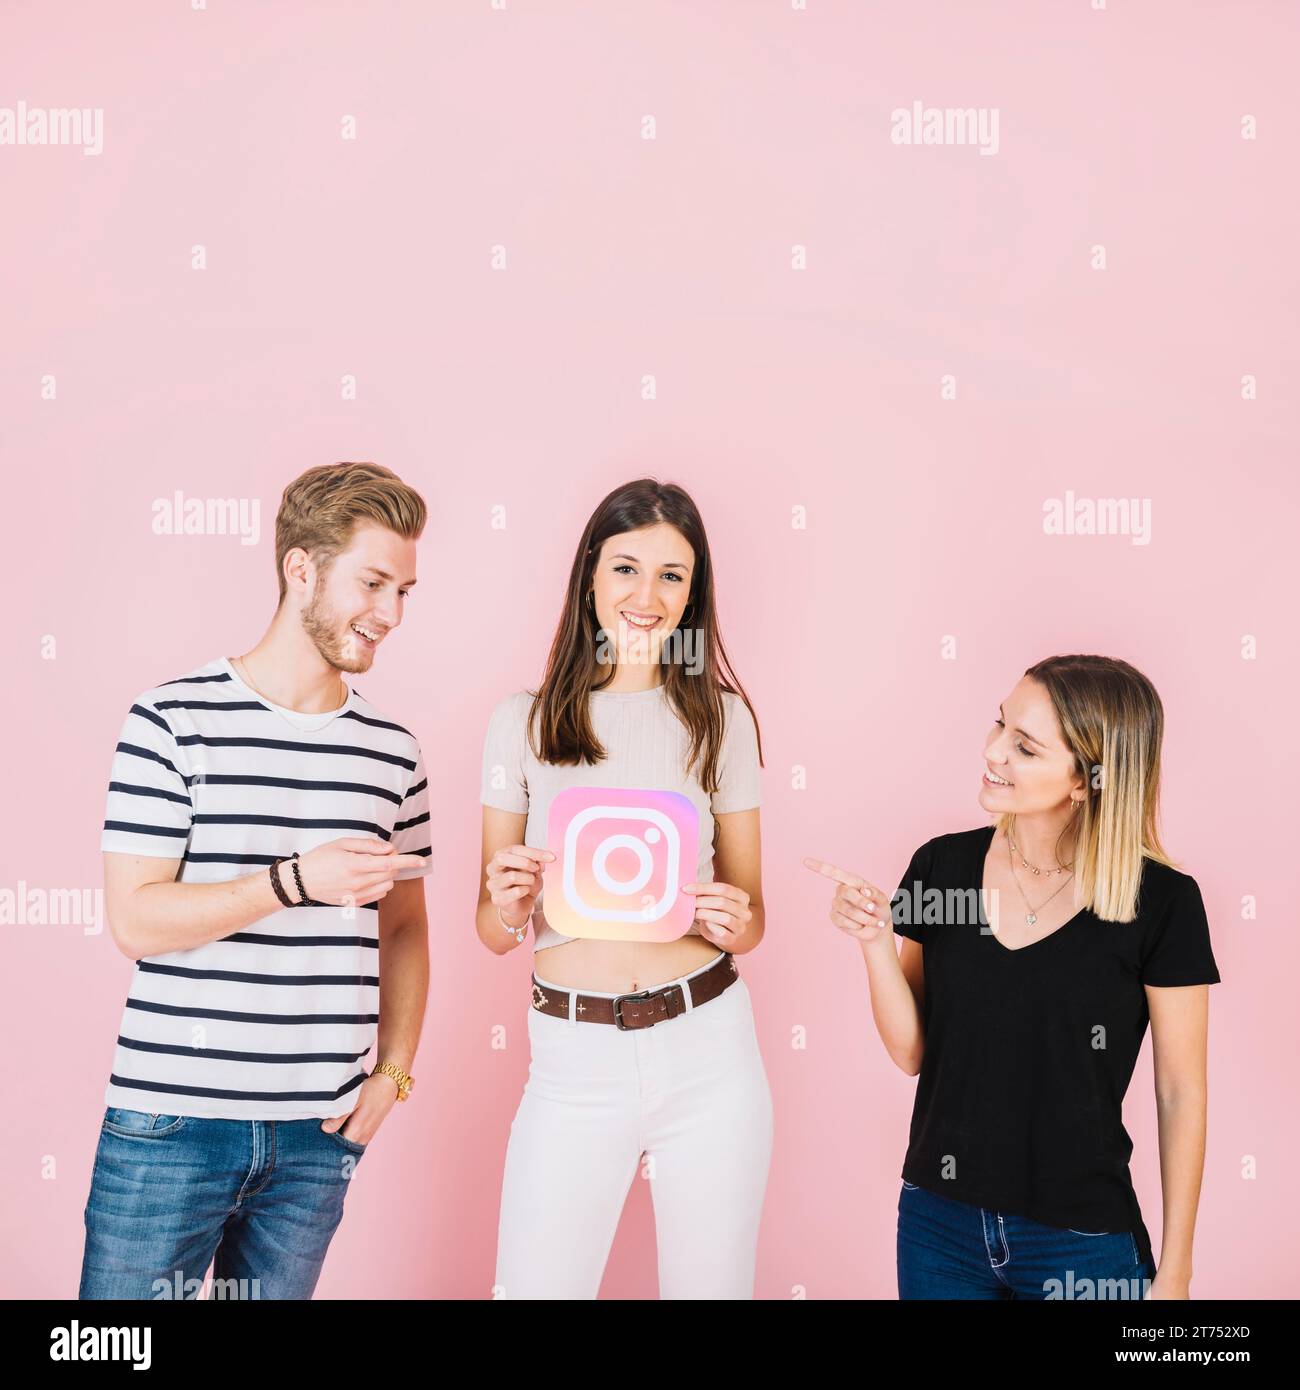 Femme homme heureux pointant leur ami tenant l'icône instagram Banque D'Images